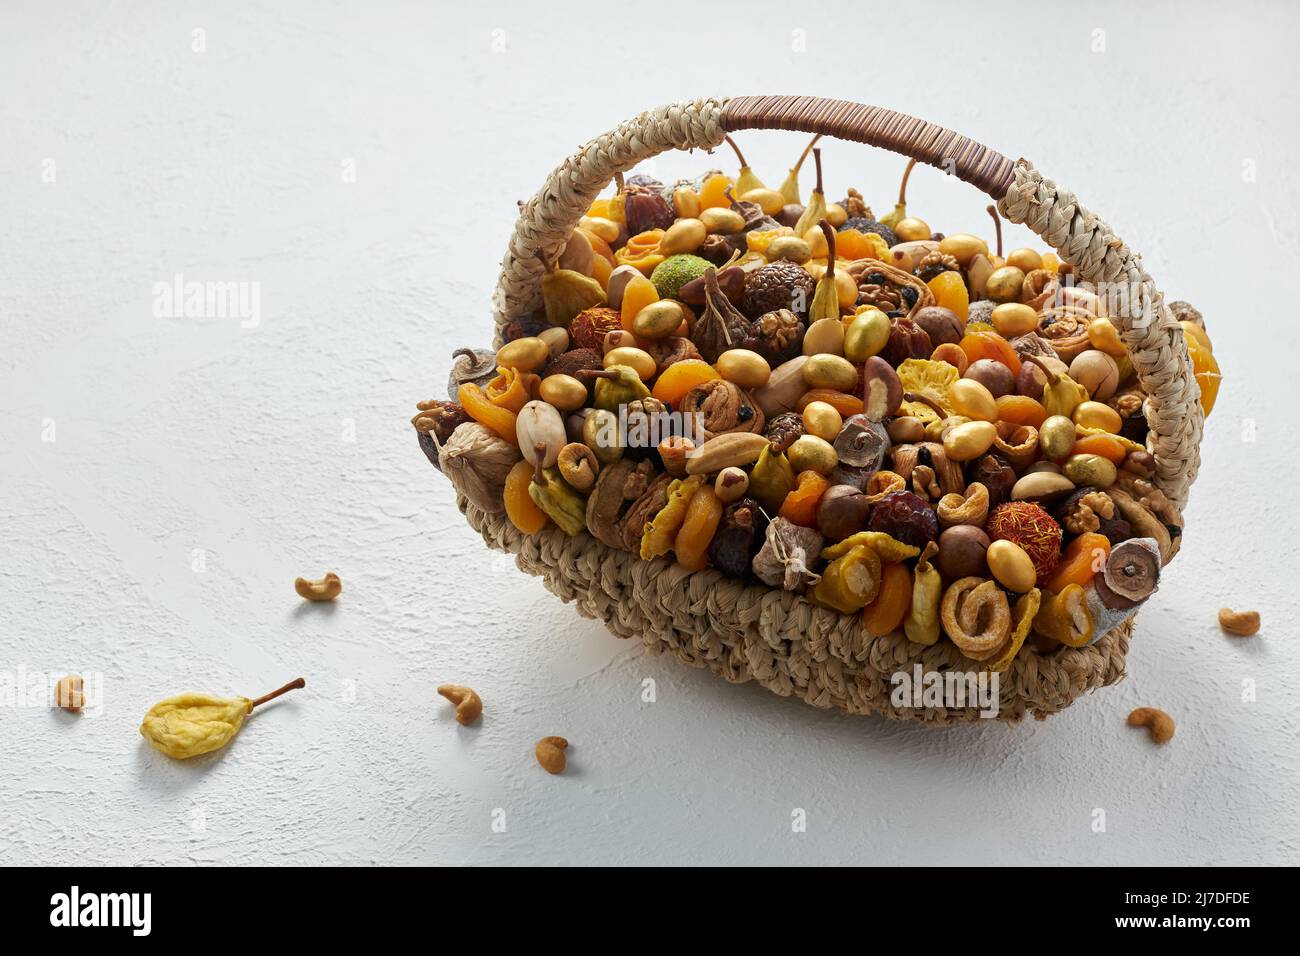 Cesta grande de mimbre llena de frutos secos y frutos secos sobre un fondo blanco Foto de stock